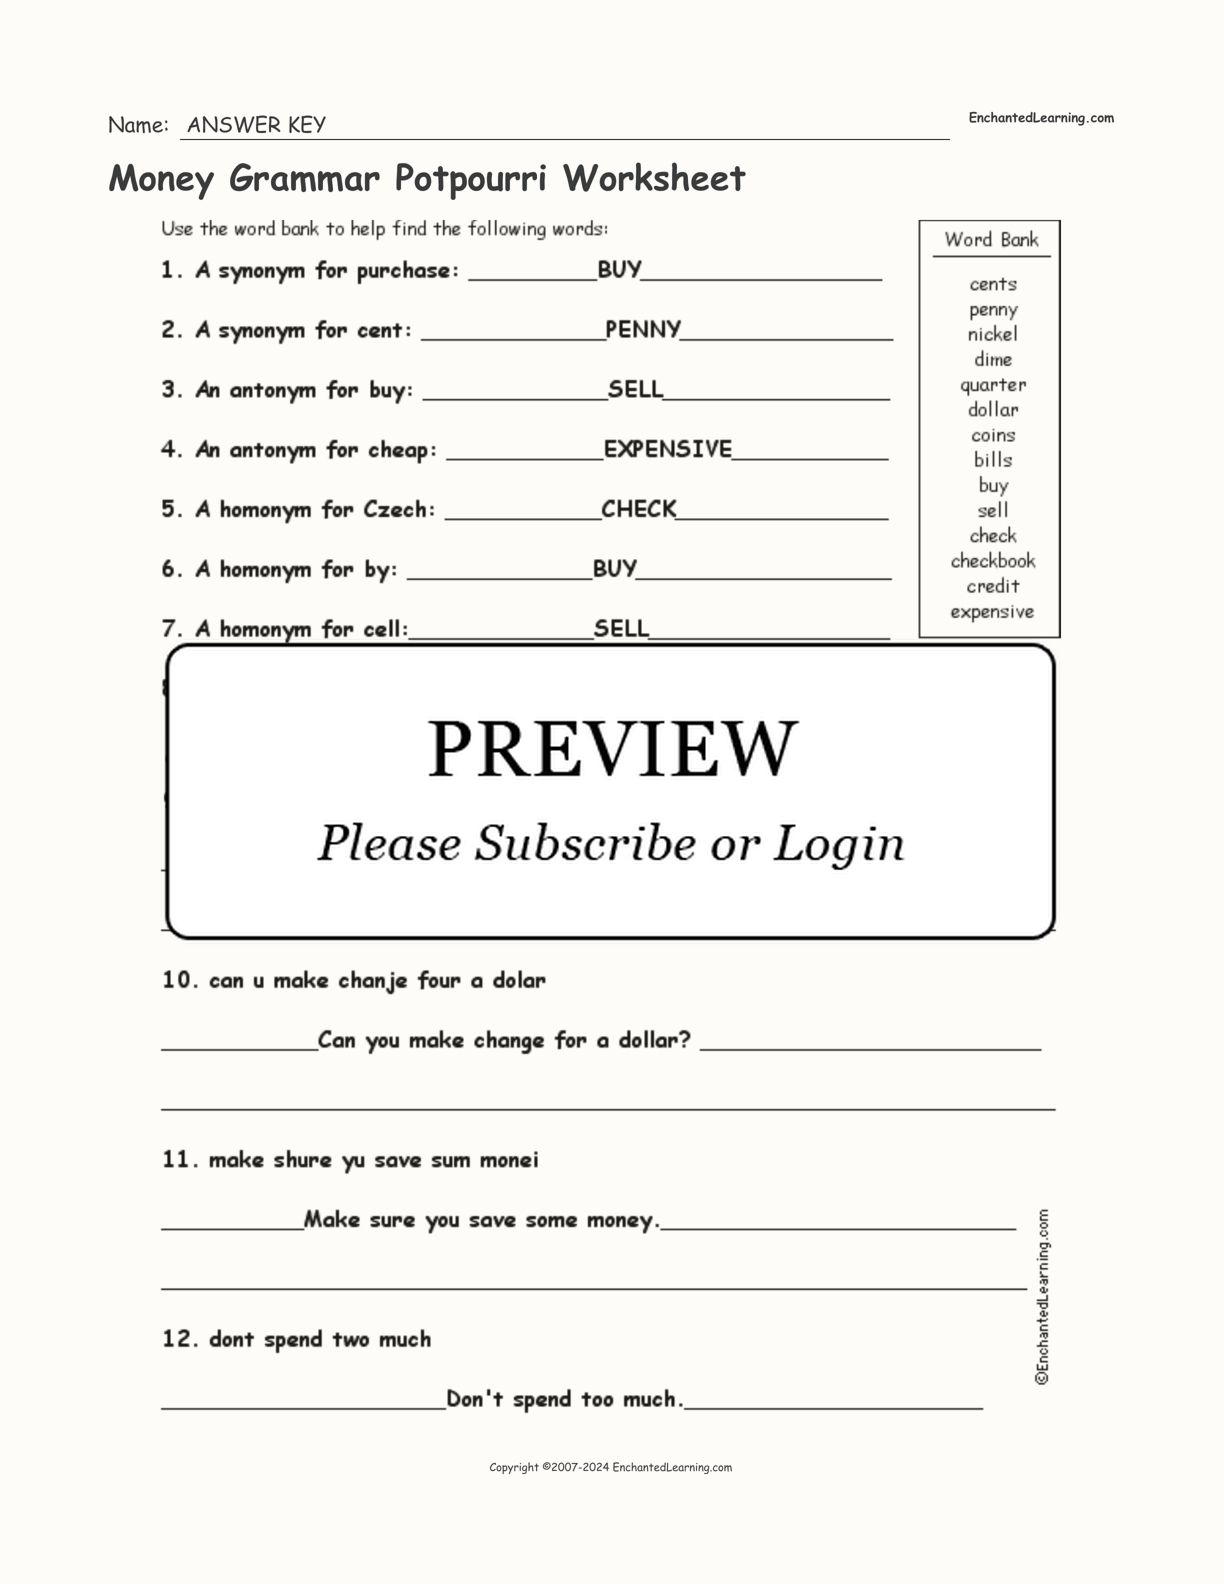 Money Grammar Potpourri Worksheet interactive worksheet page 2